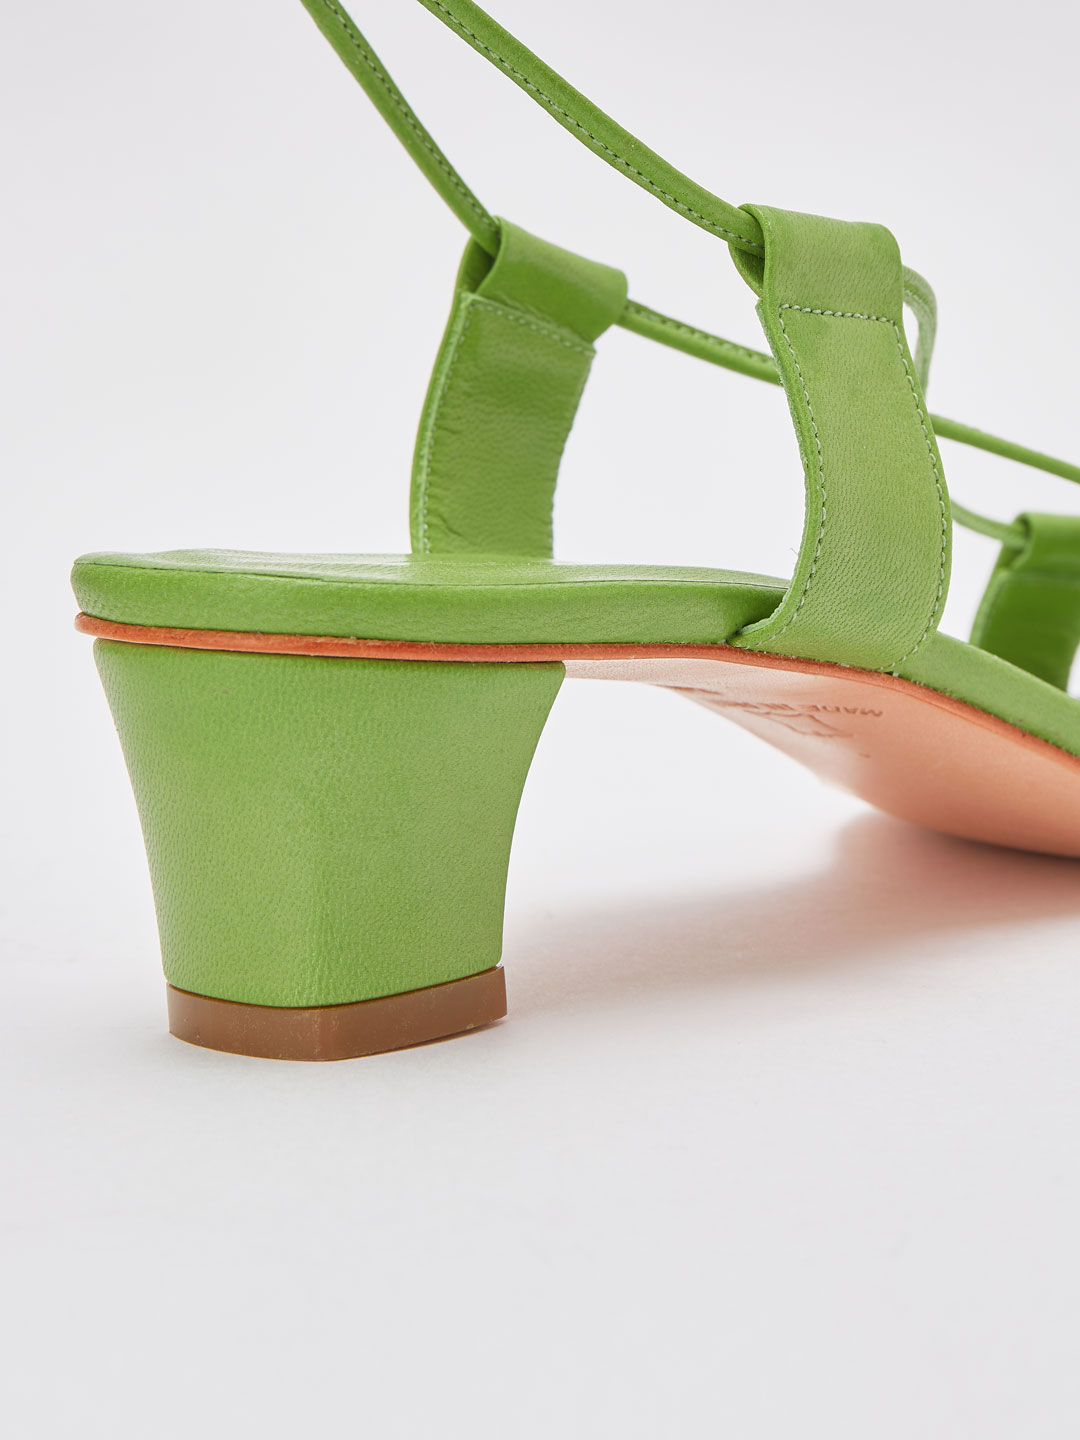 Pavone Sandals - Green